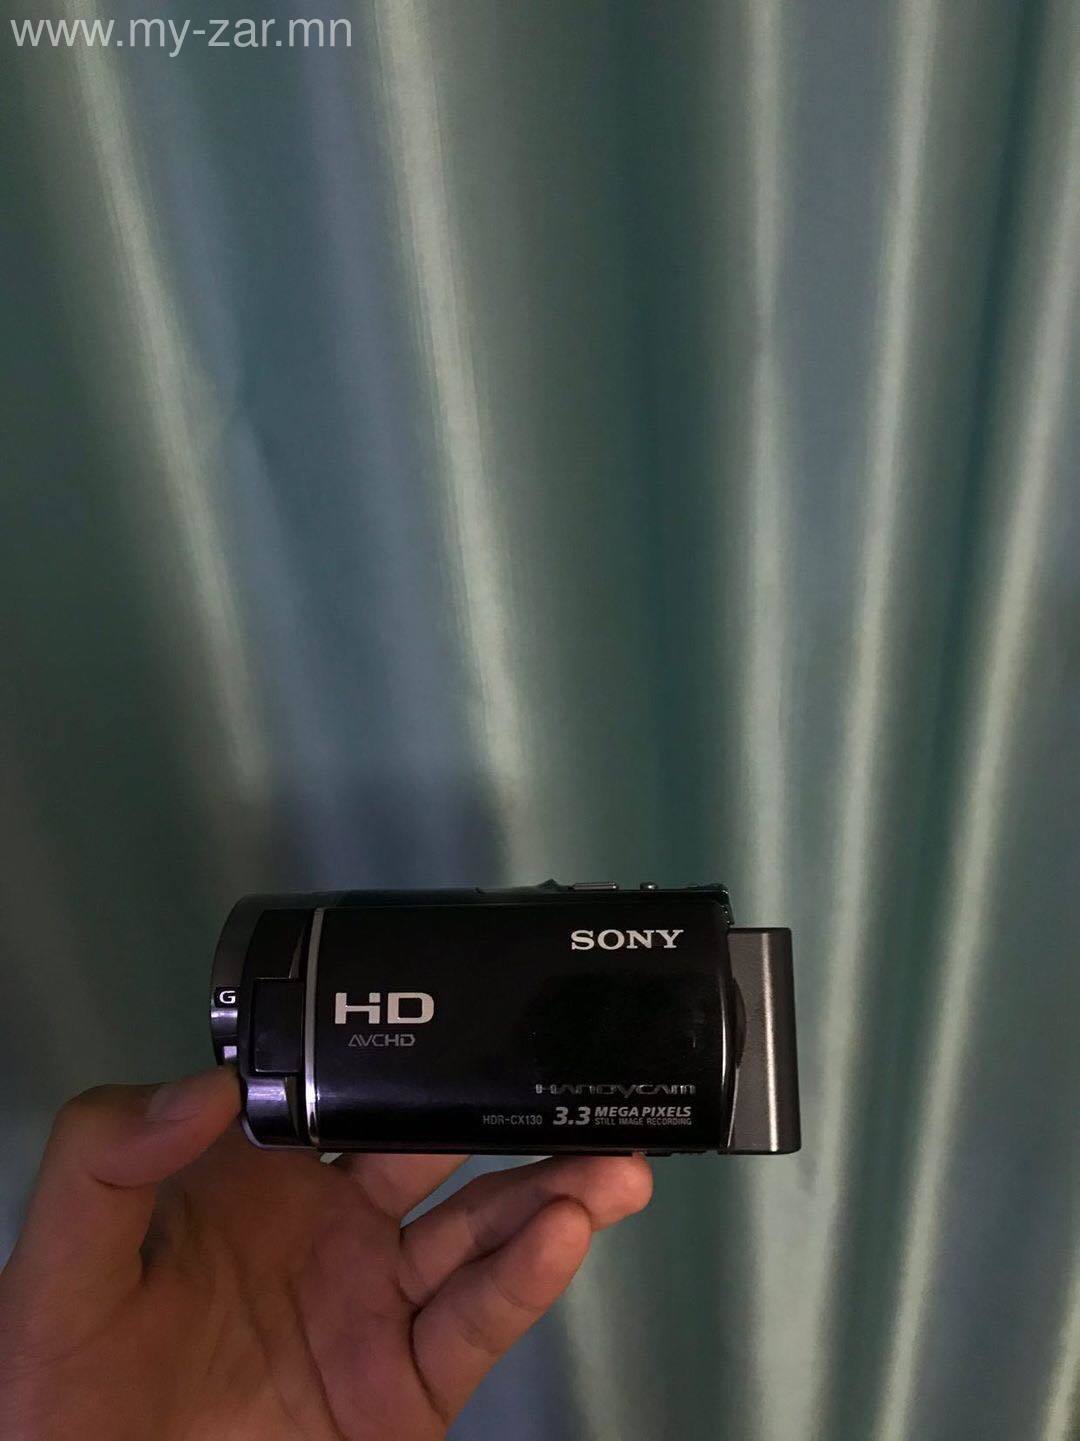 Sony HDR-CX130 Бичлэгийн Камер 1920x1080 бичлэг хийнэ 32GB SD card дагалдана 